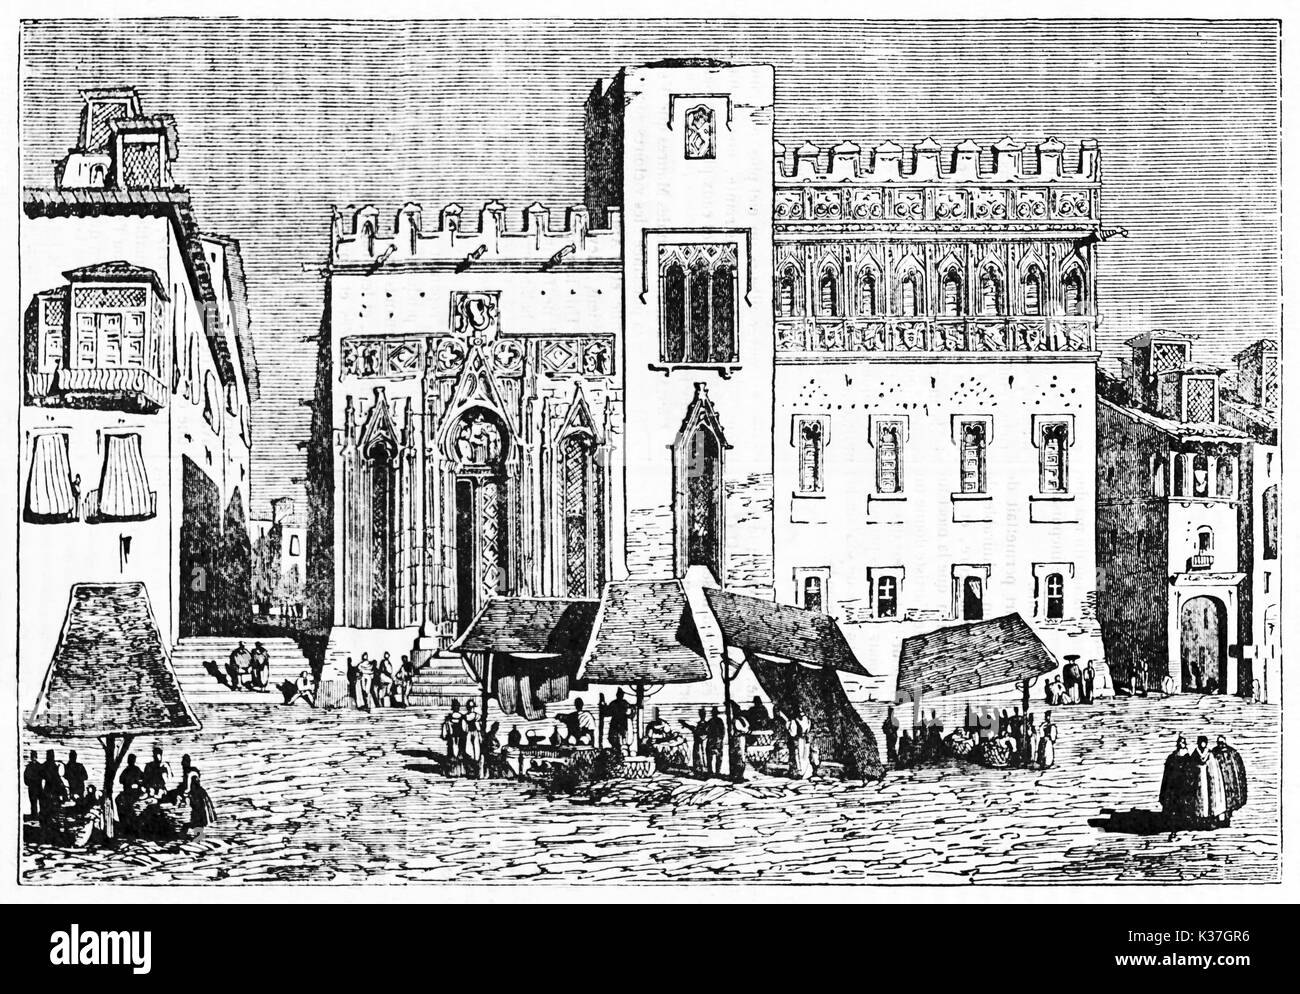 La rue du marché en plein air médiéval devant un monument espagnol, Valence Espagne bourse. Vieille Illustration par Jackson publié le magasin pittoresque Paris 1834 Banque D'Images